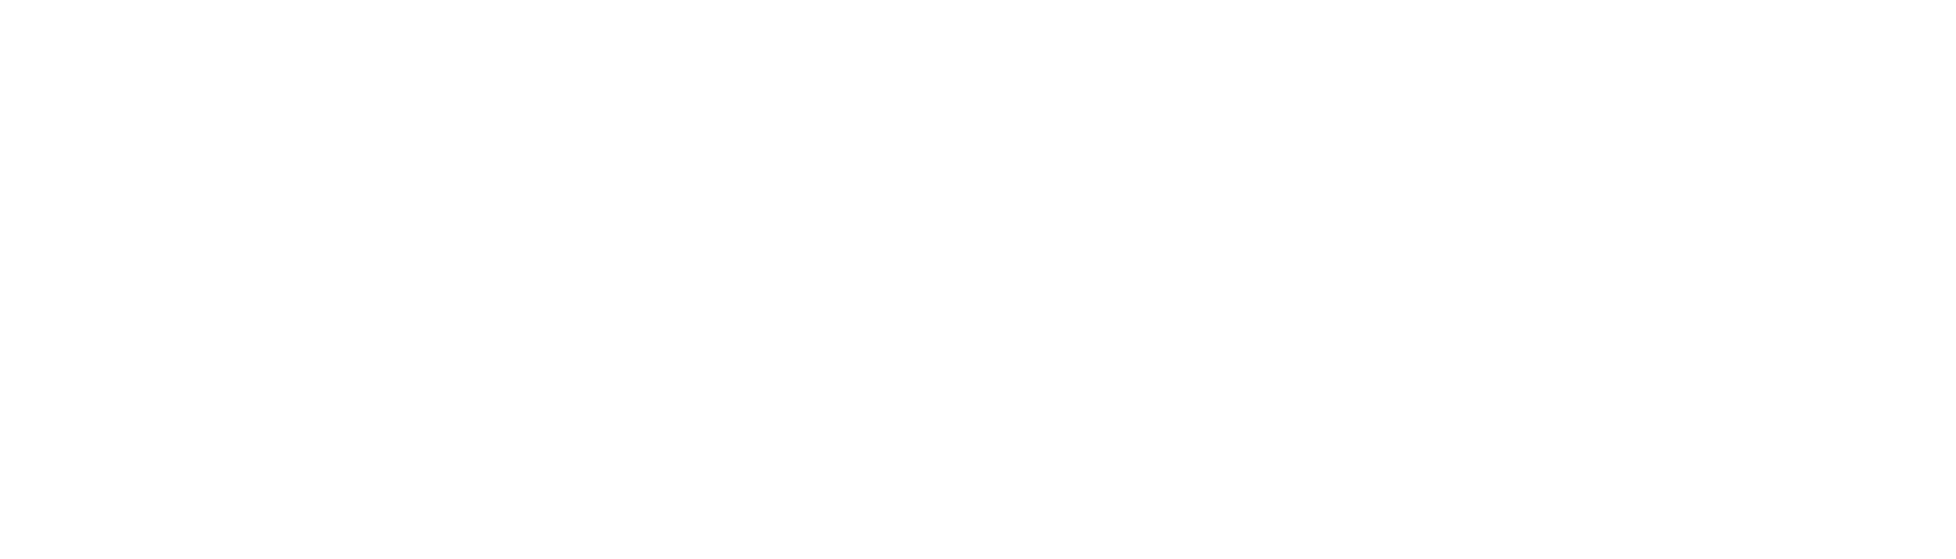 Outdoorsy Logo